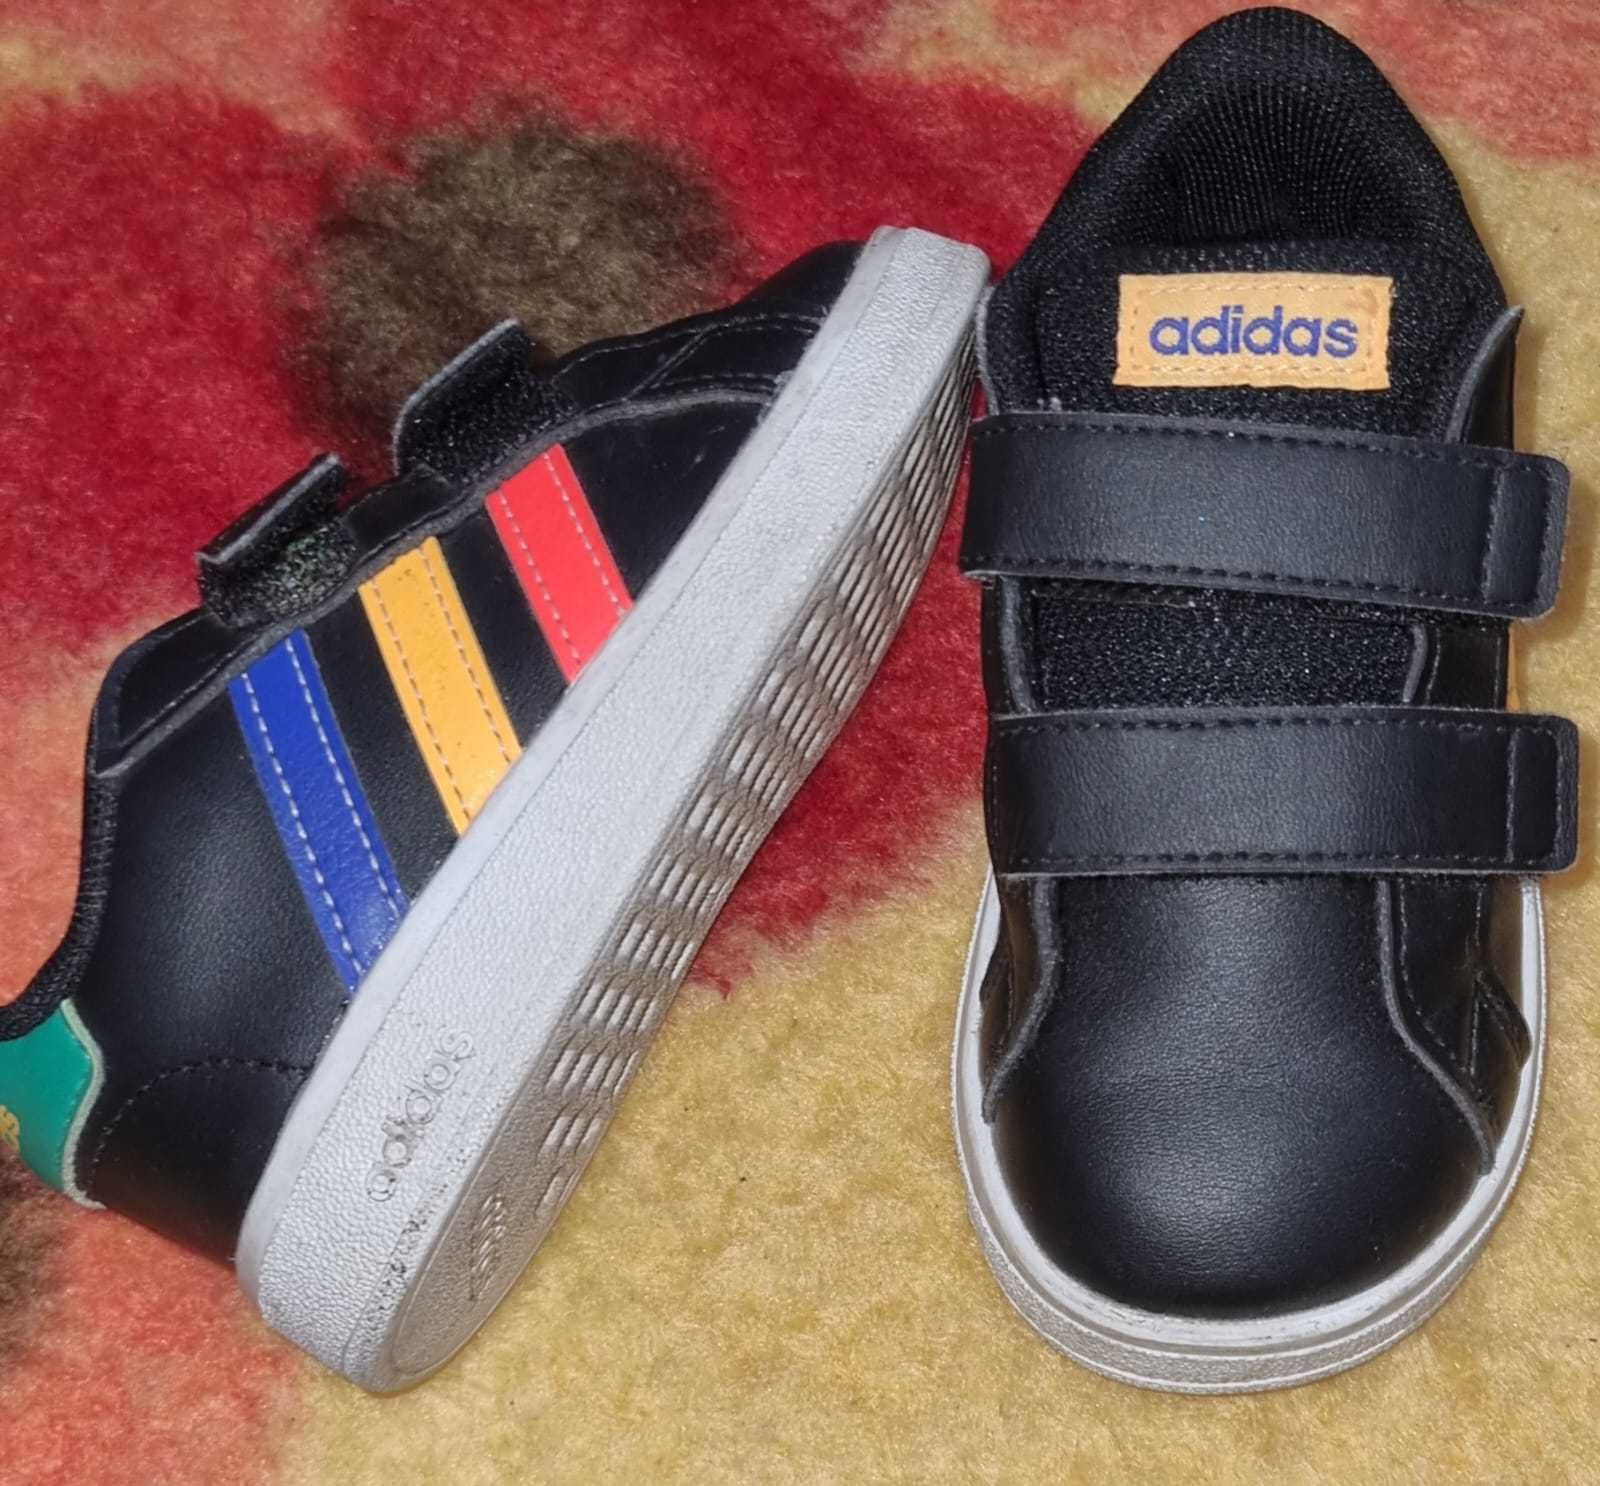 Adidasi copii Sportswear Negru,Roșu,Galben,Albastru